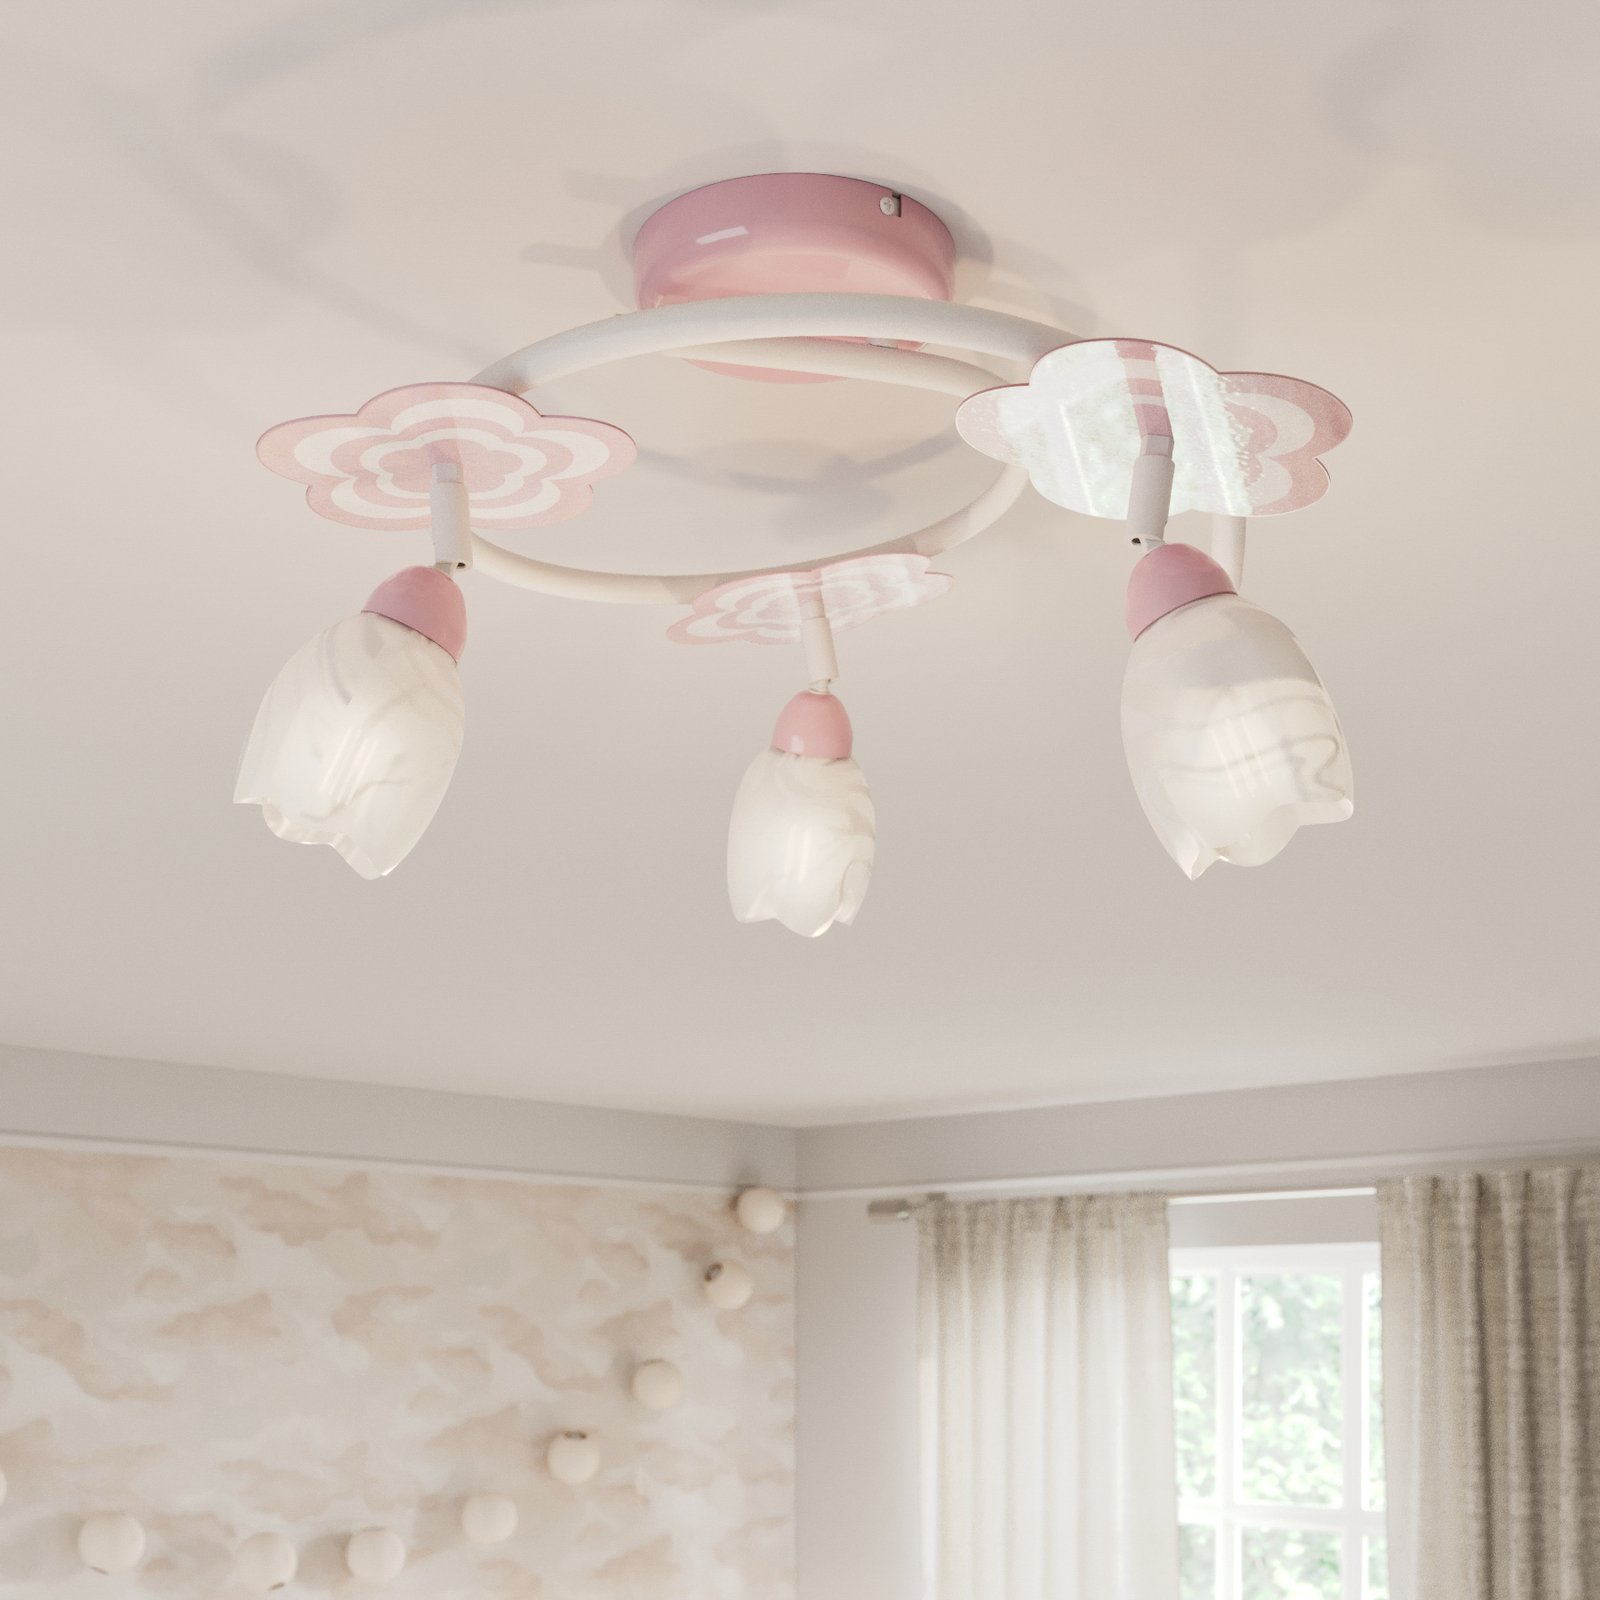 Mailin children's ceiling light in pink round